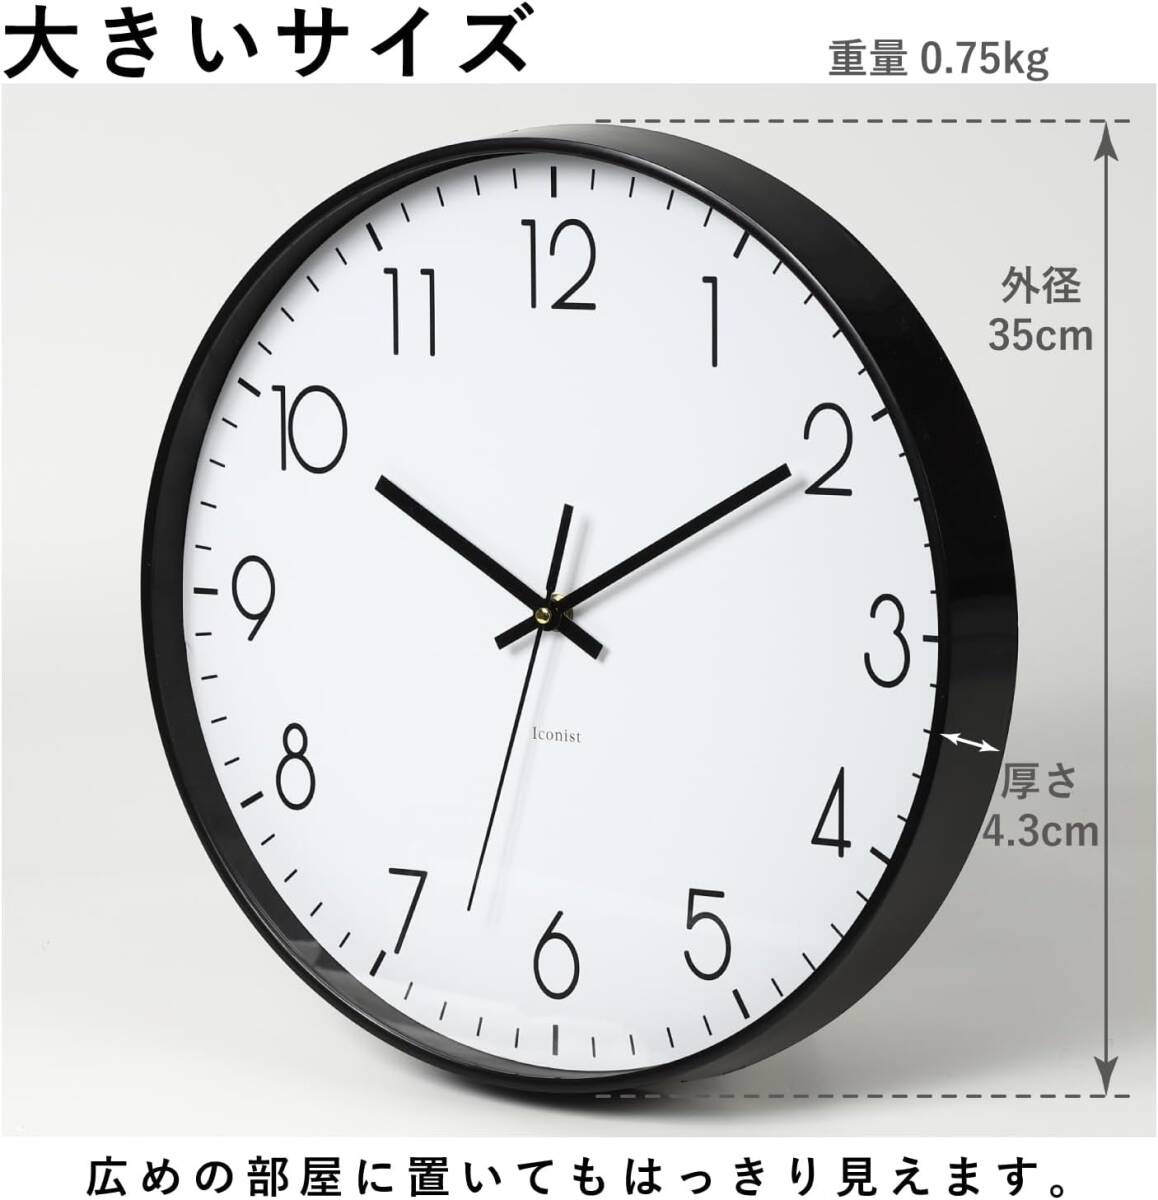 アイコニスト 壁掛け時計 35cm シンプル 大きい CL35-01 (ブラック) の画像2